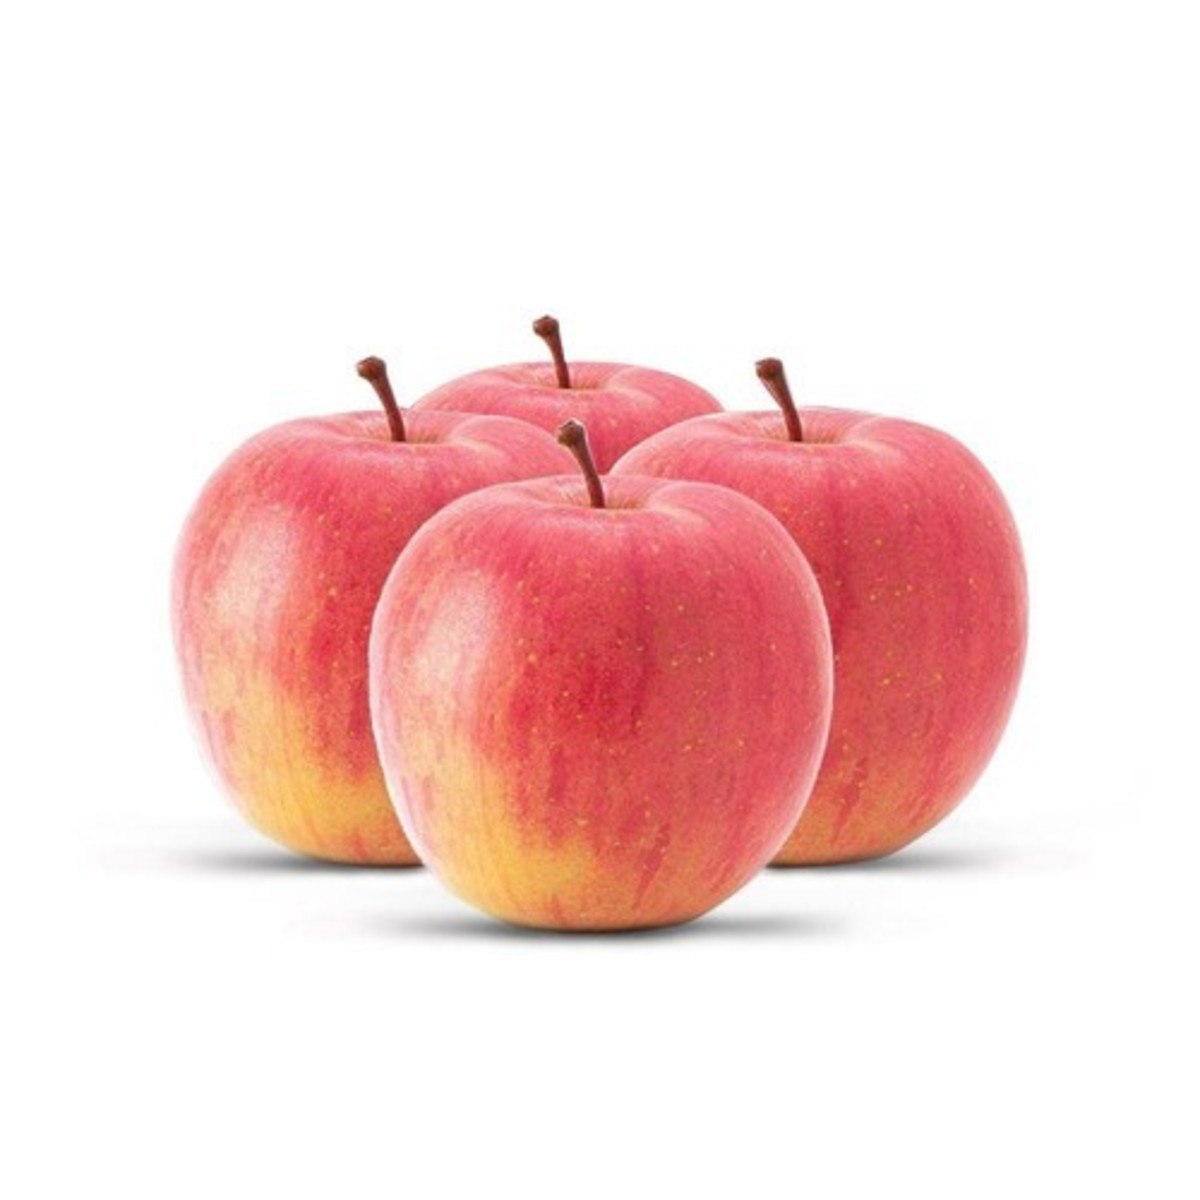 تفاح فوجي الممتاز 1 كجم تقريباً